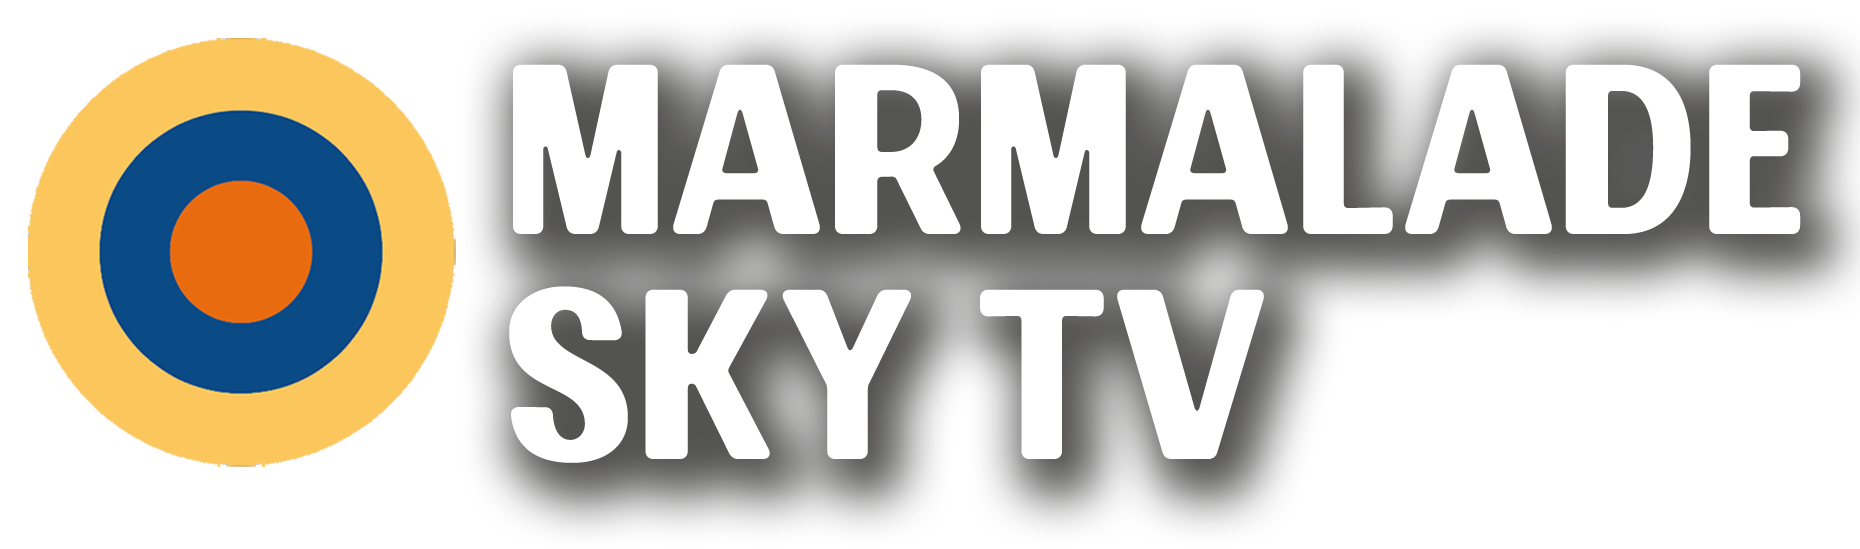 Marmalade Sky TV